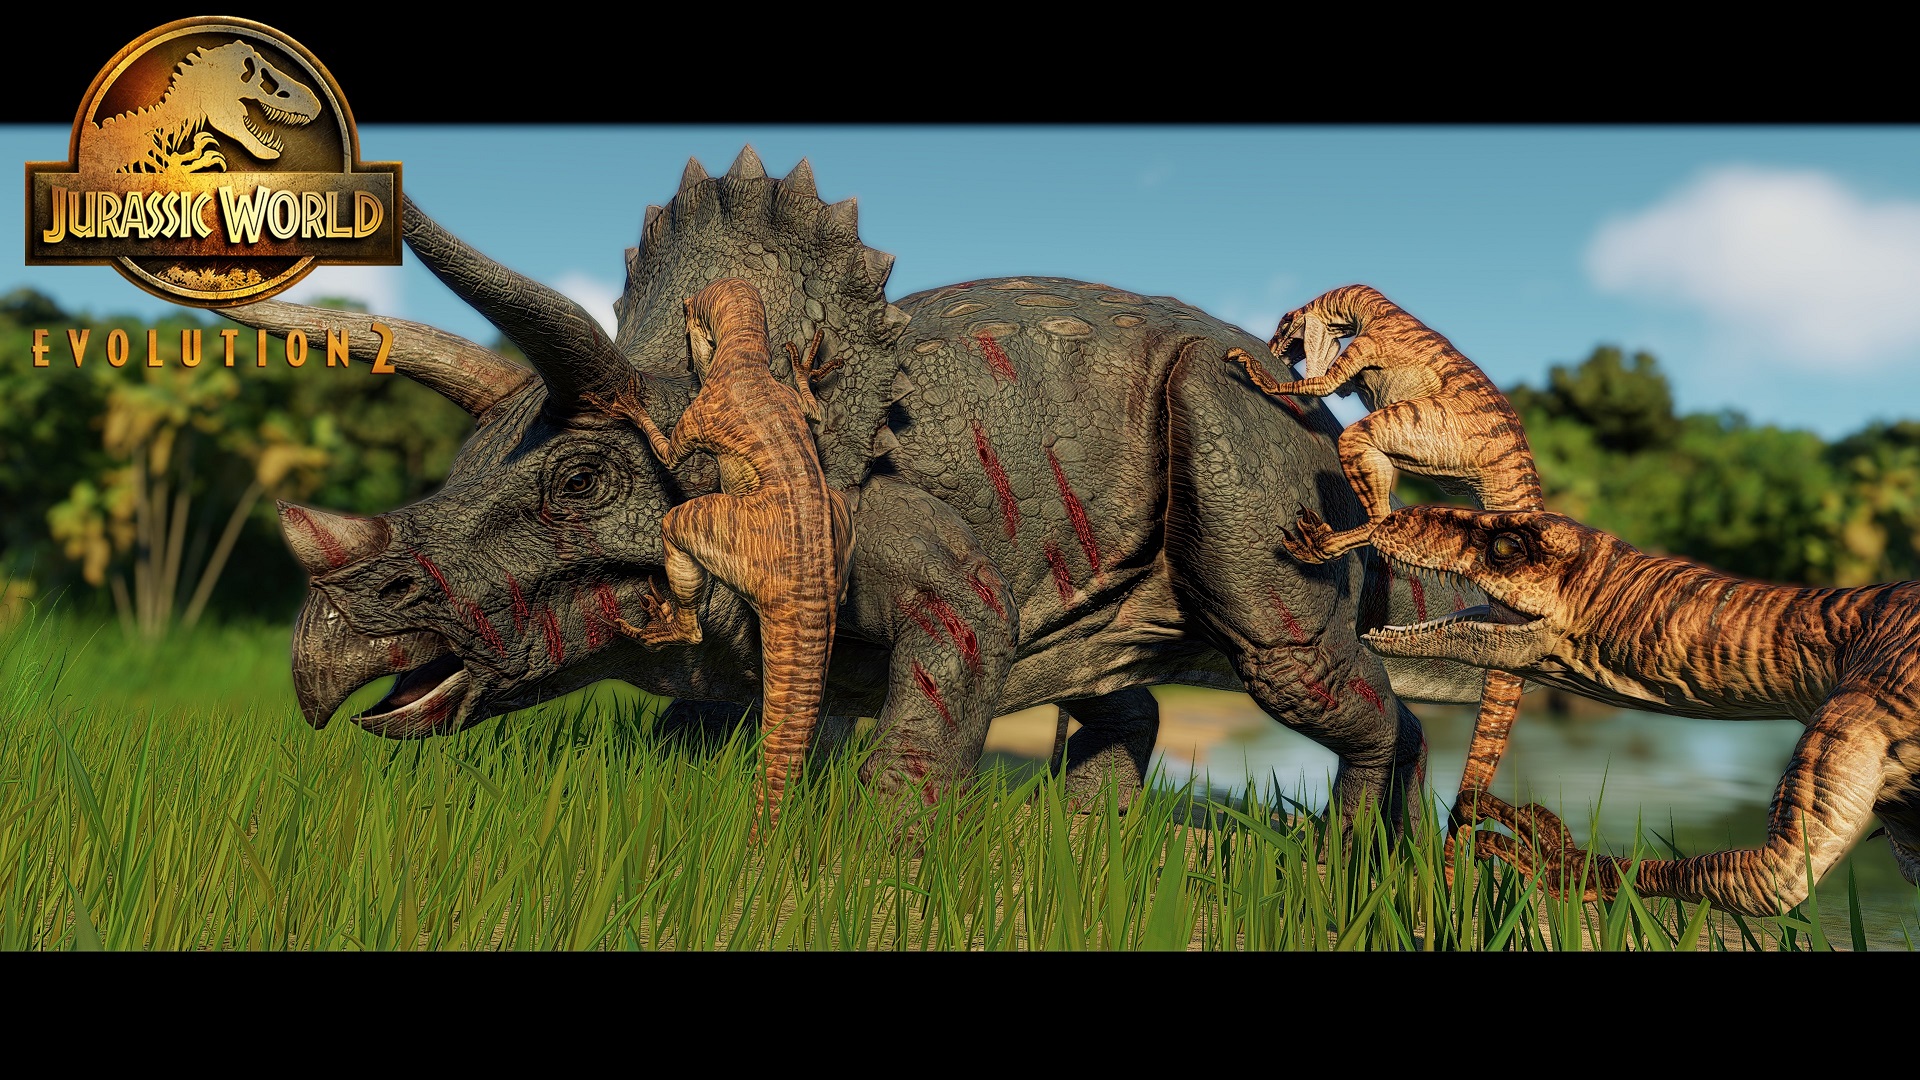 Raptor pack vs triceratops pic.jpg